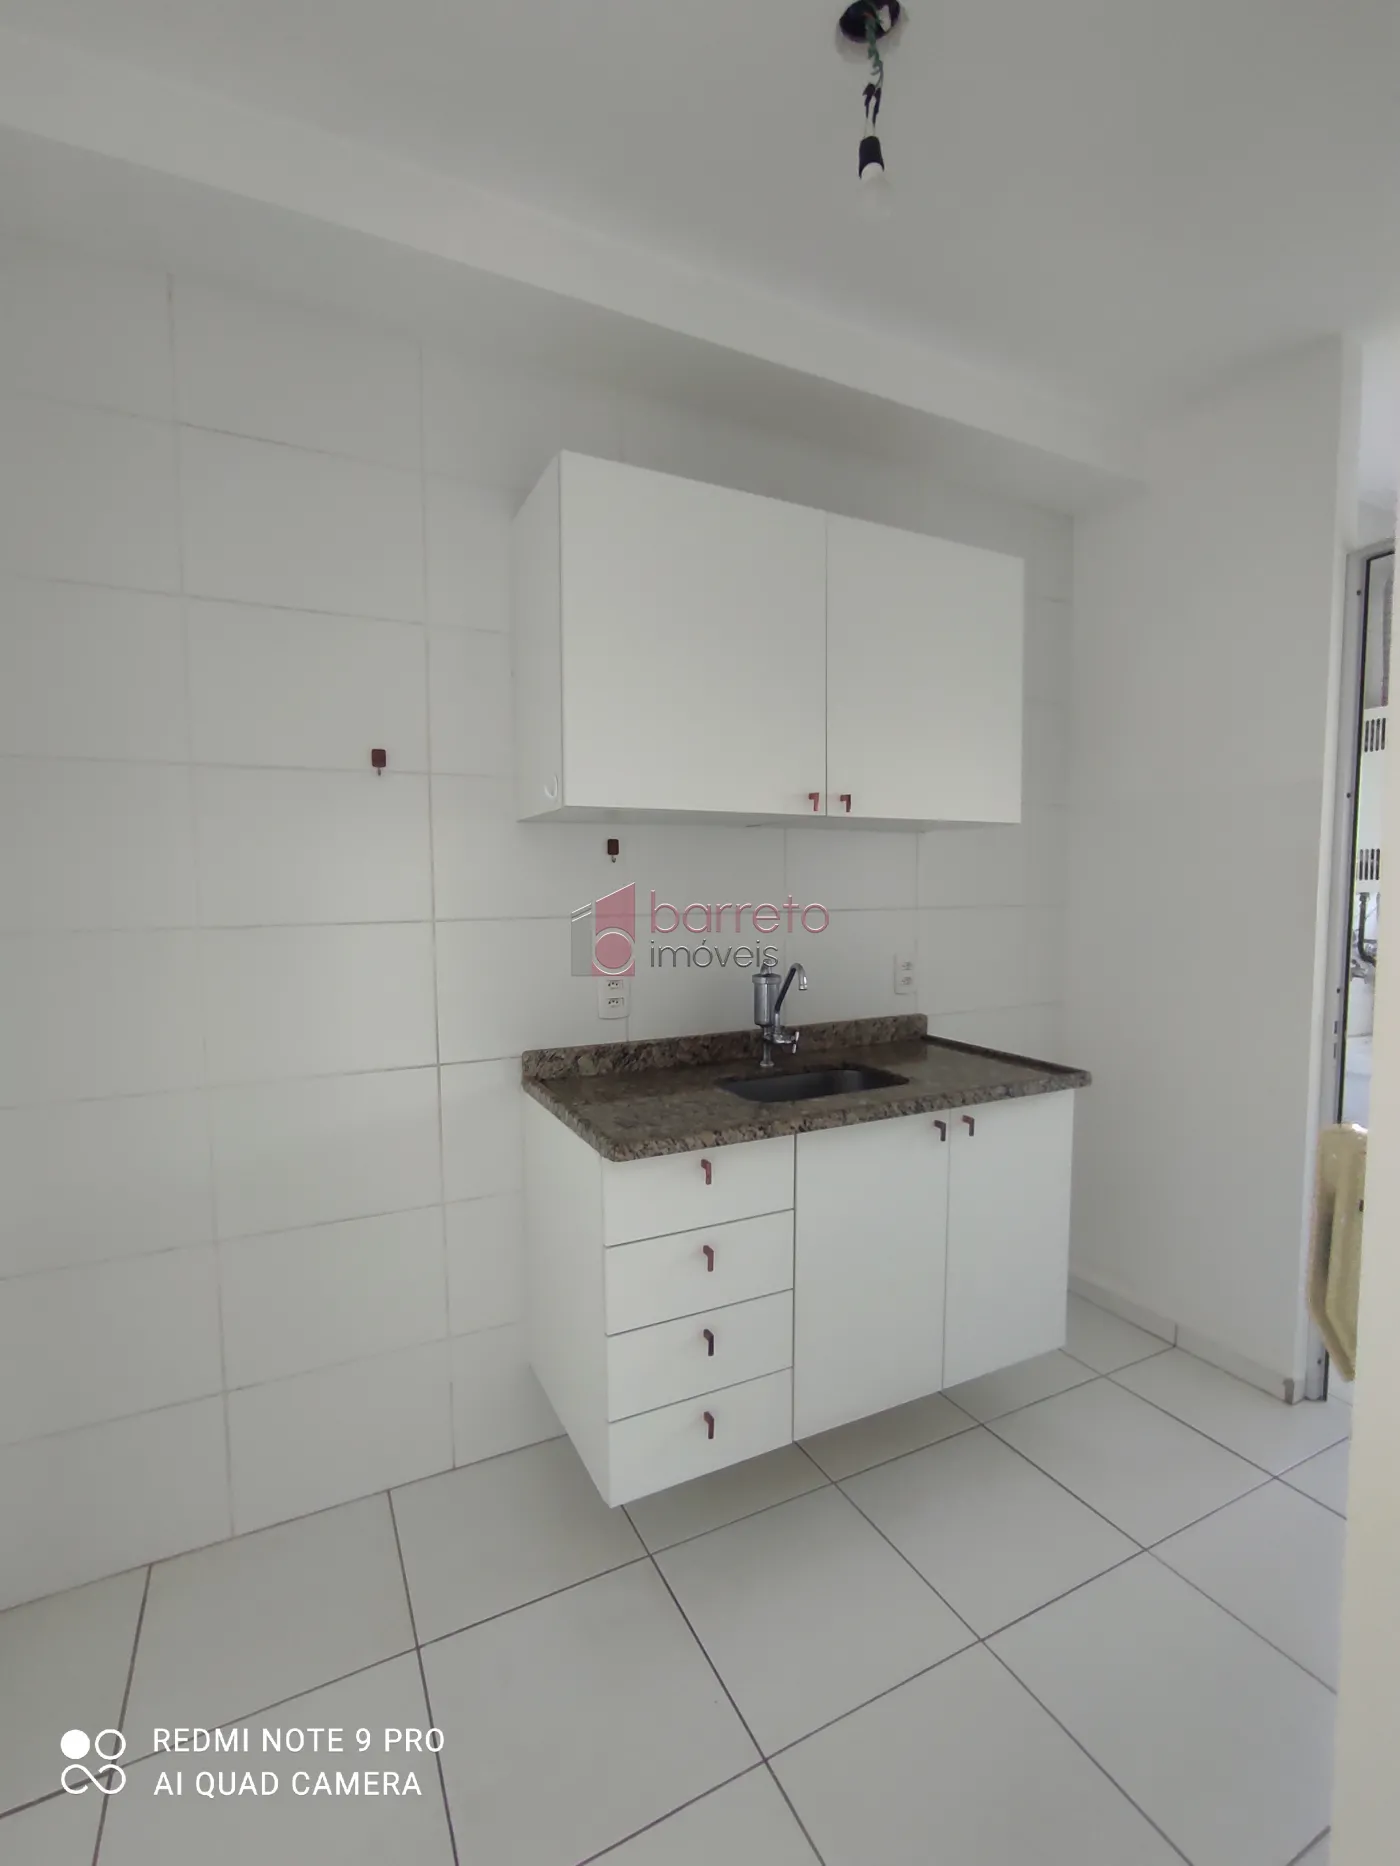 Alugar Apartamento / Padrão em Jundiaí R$ 1.900,00 - Foto 12